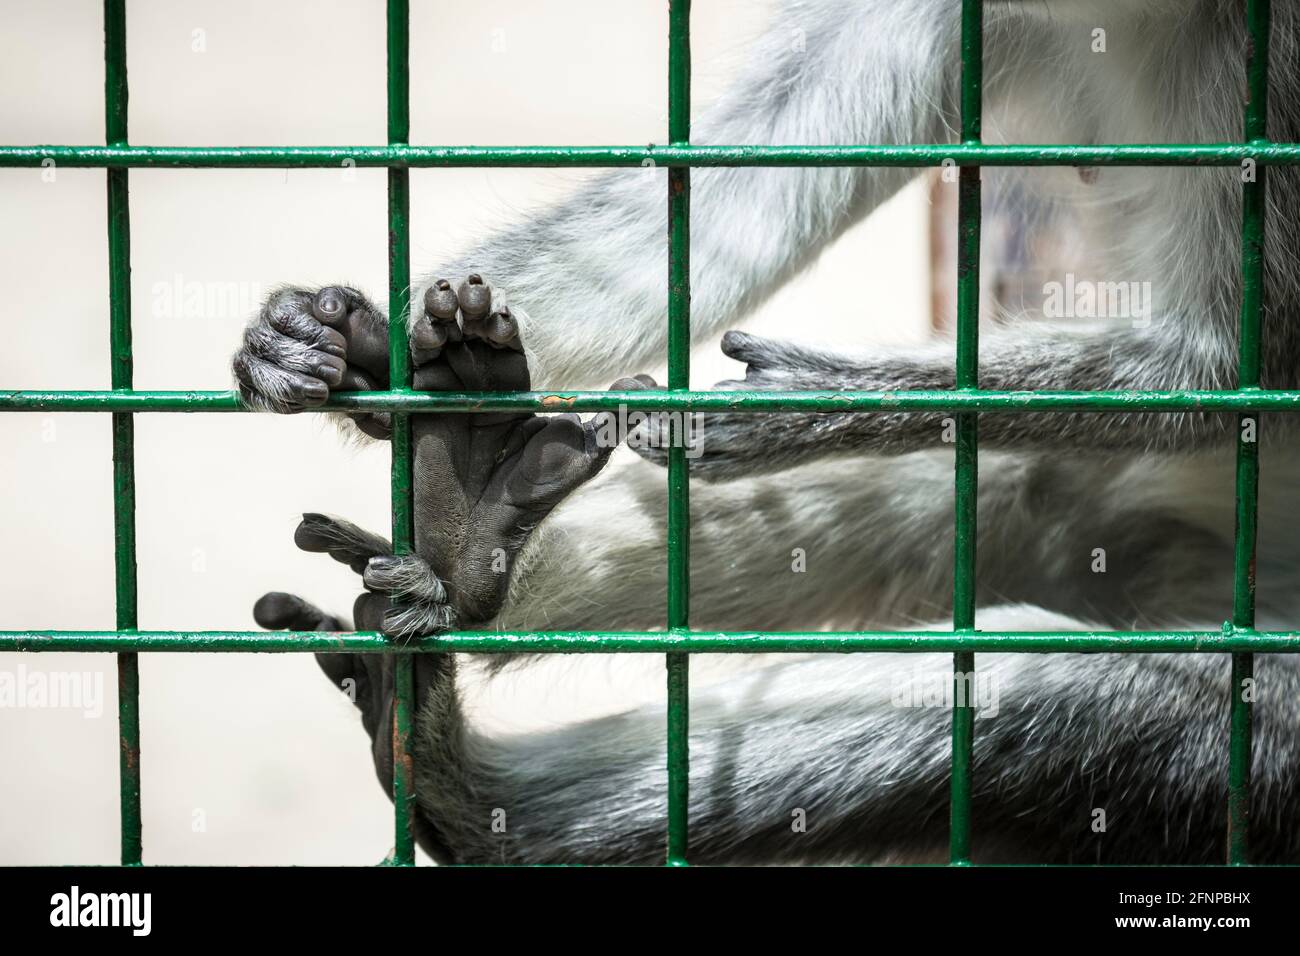 Détail des pieds et des mains du singe qui se tiennent sur les barres de la cage Banque D'Images